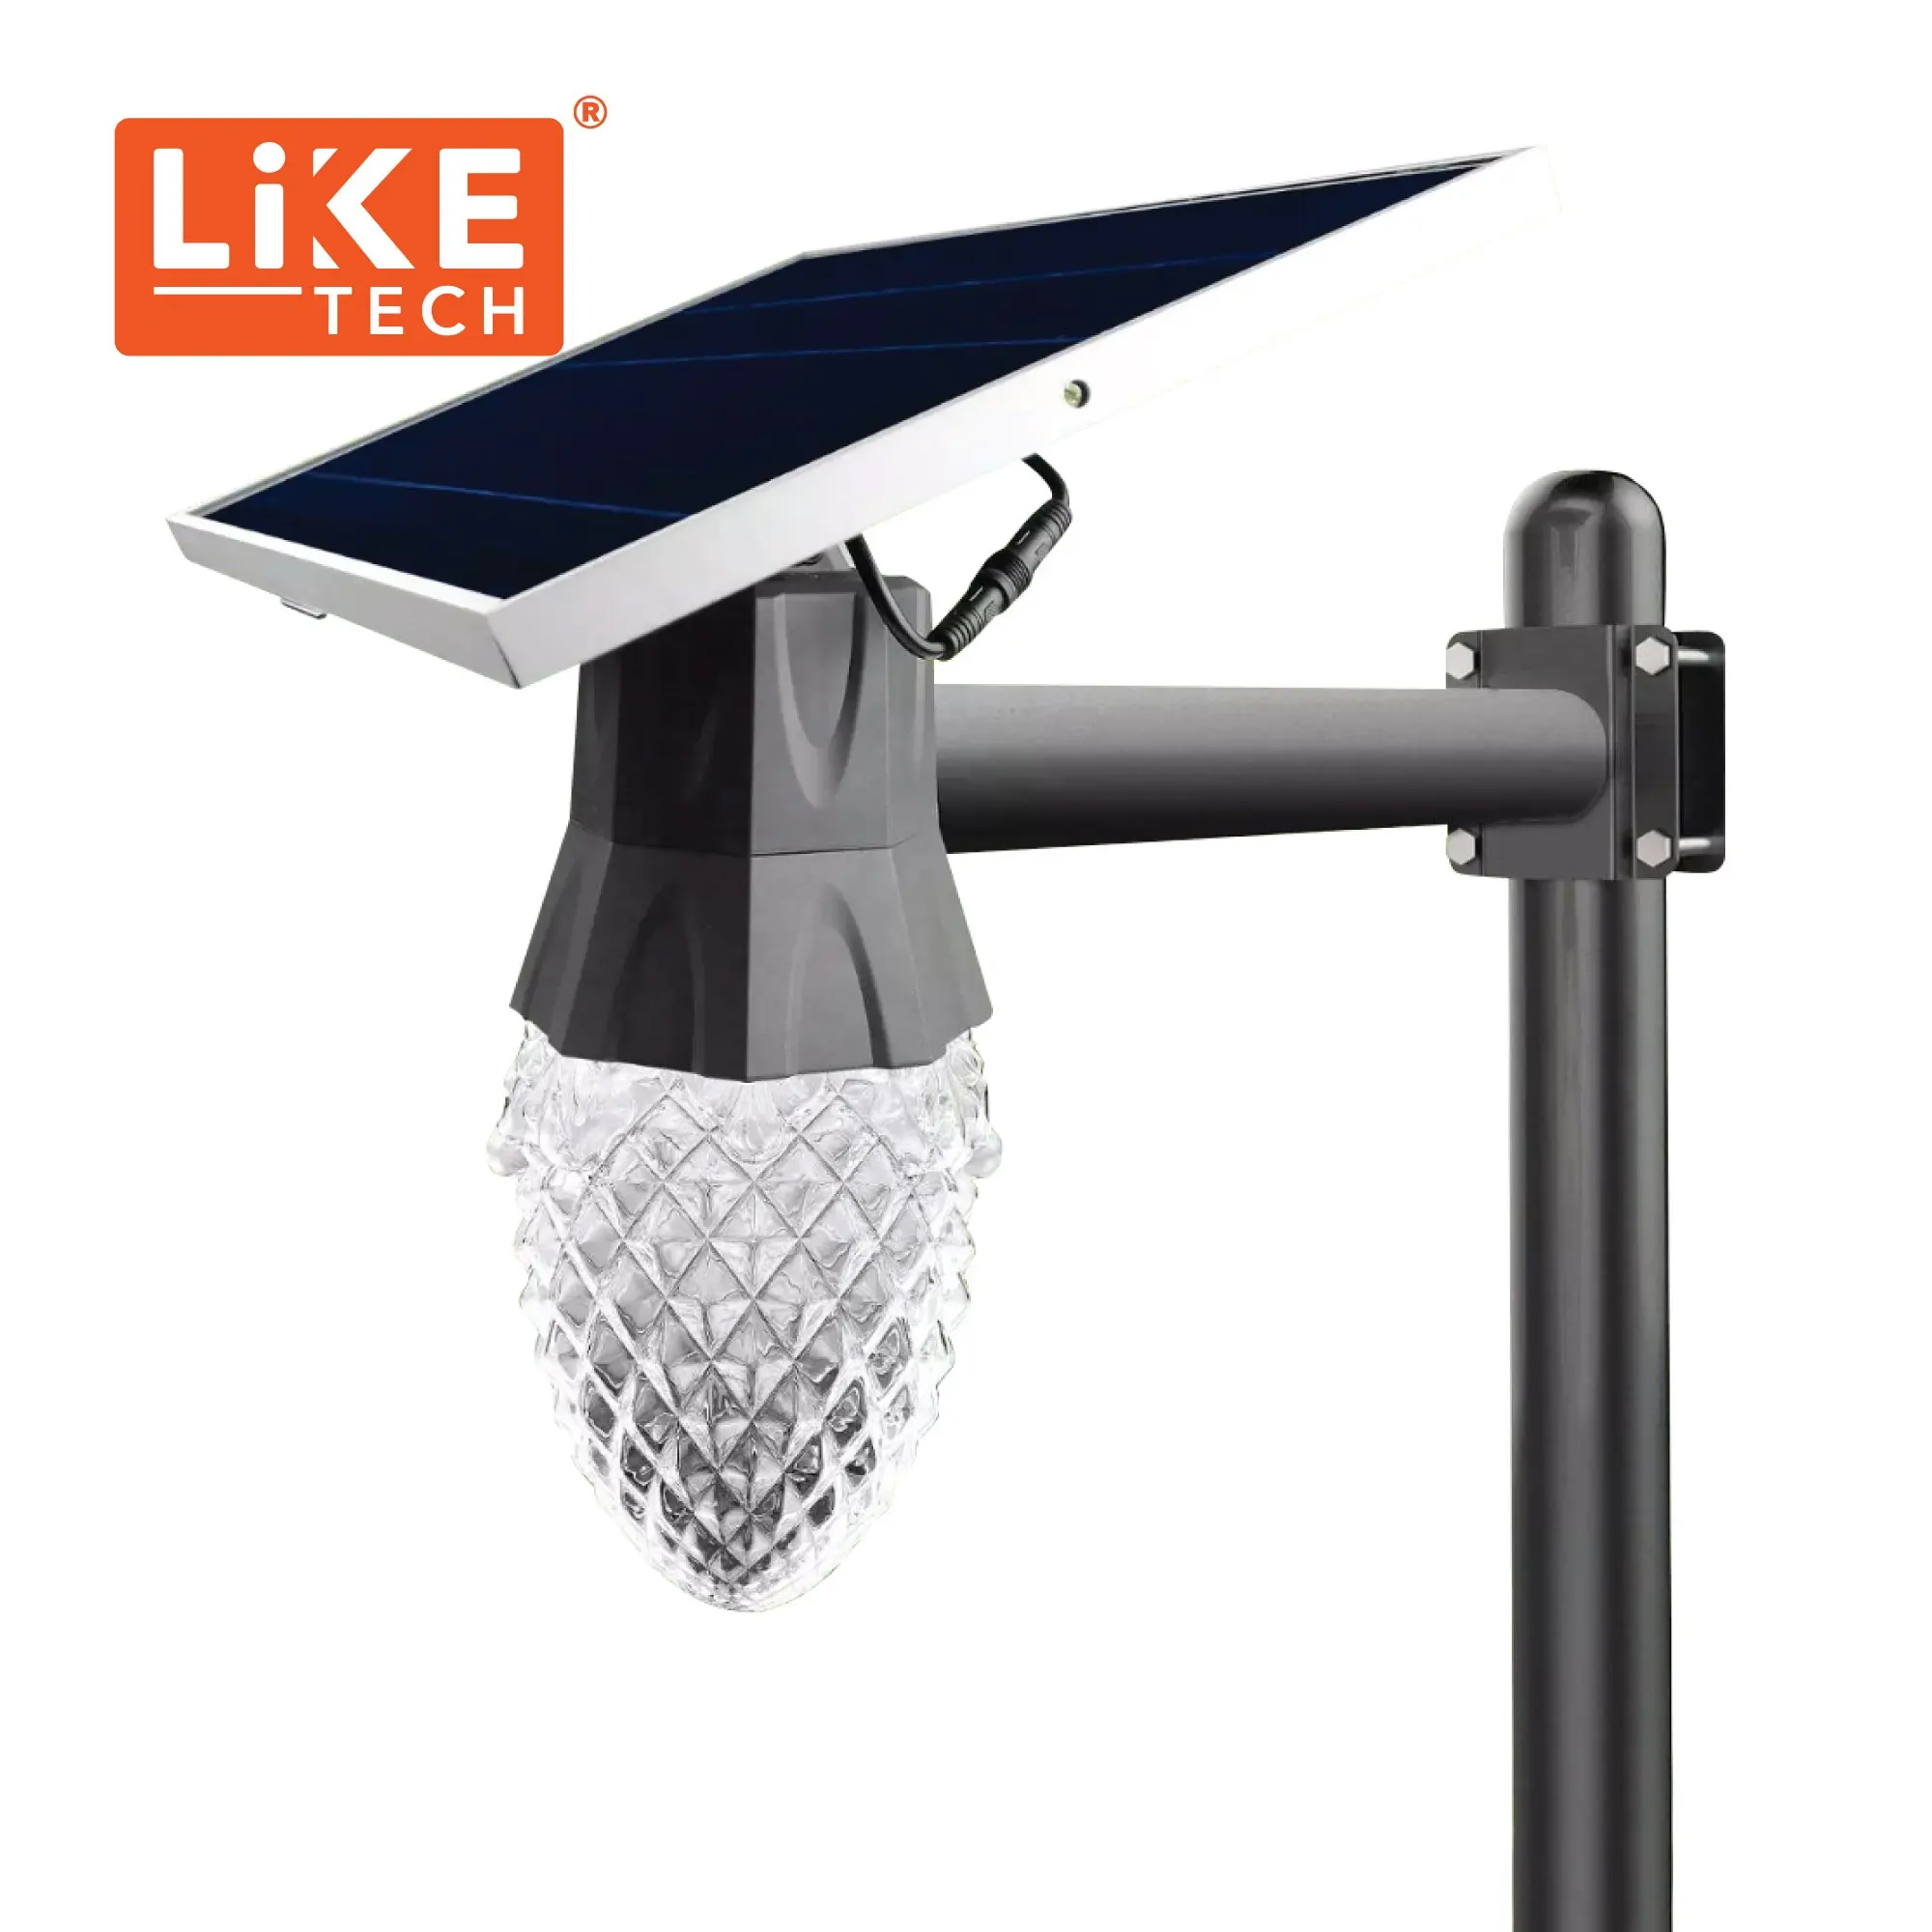 LikeTech Diamon12 Lampu Taman Tenaga Surya, Bagian Lampu Led Luar Ruangan Lampu Taman Tenaga Surya untuk Taman atau Di Mana Saja Seperti Barang Cantik